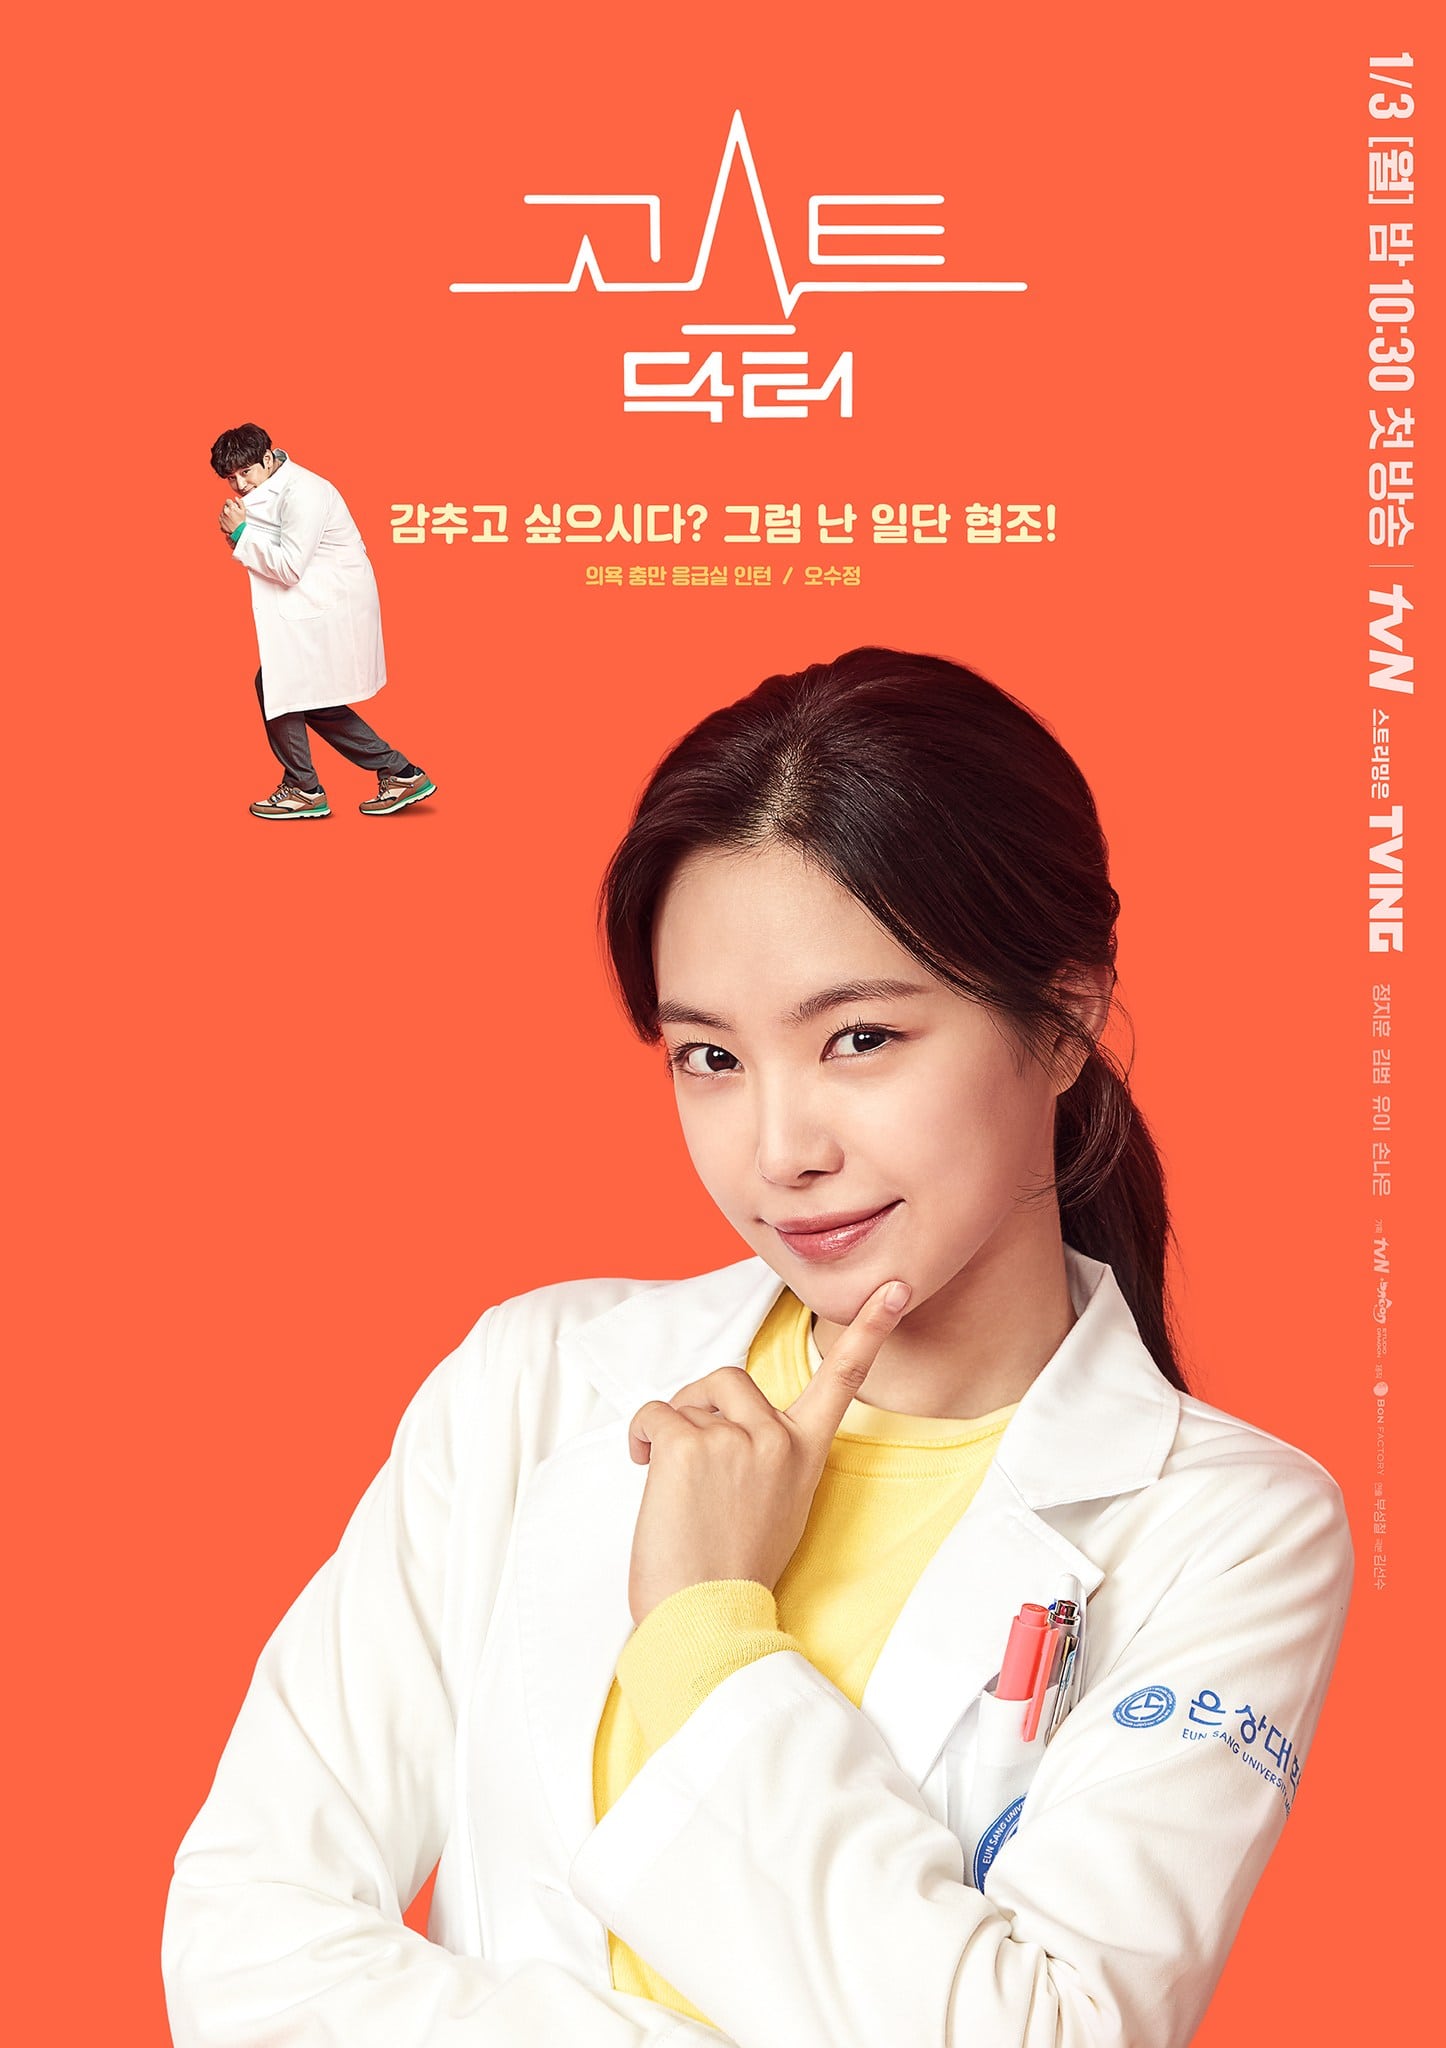 Rain, Kim Bum, Son Naeun de Apink y Uee son médicos enredados por un destino sobrenatural en un nuevo drama de fantasía